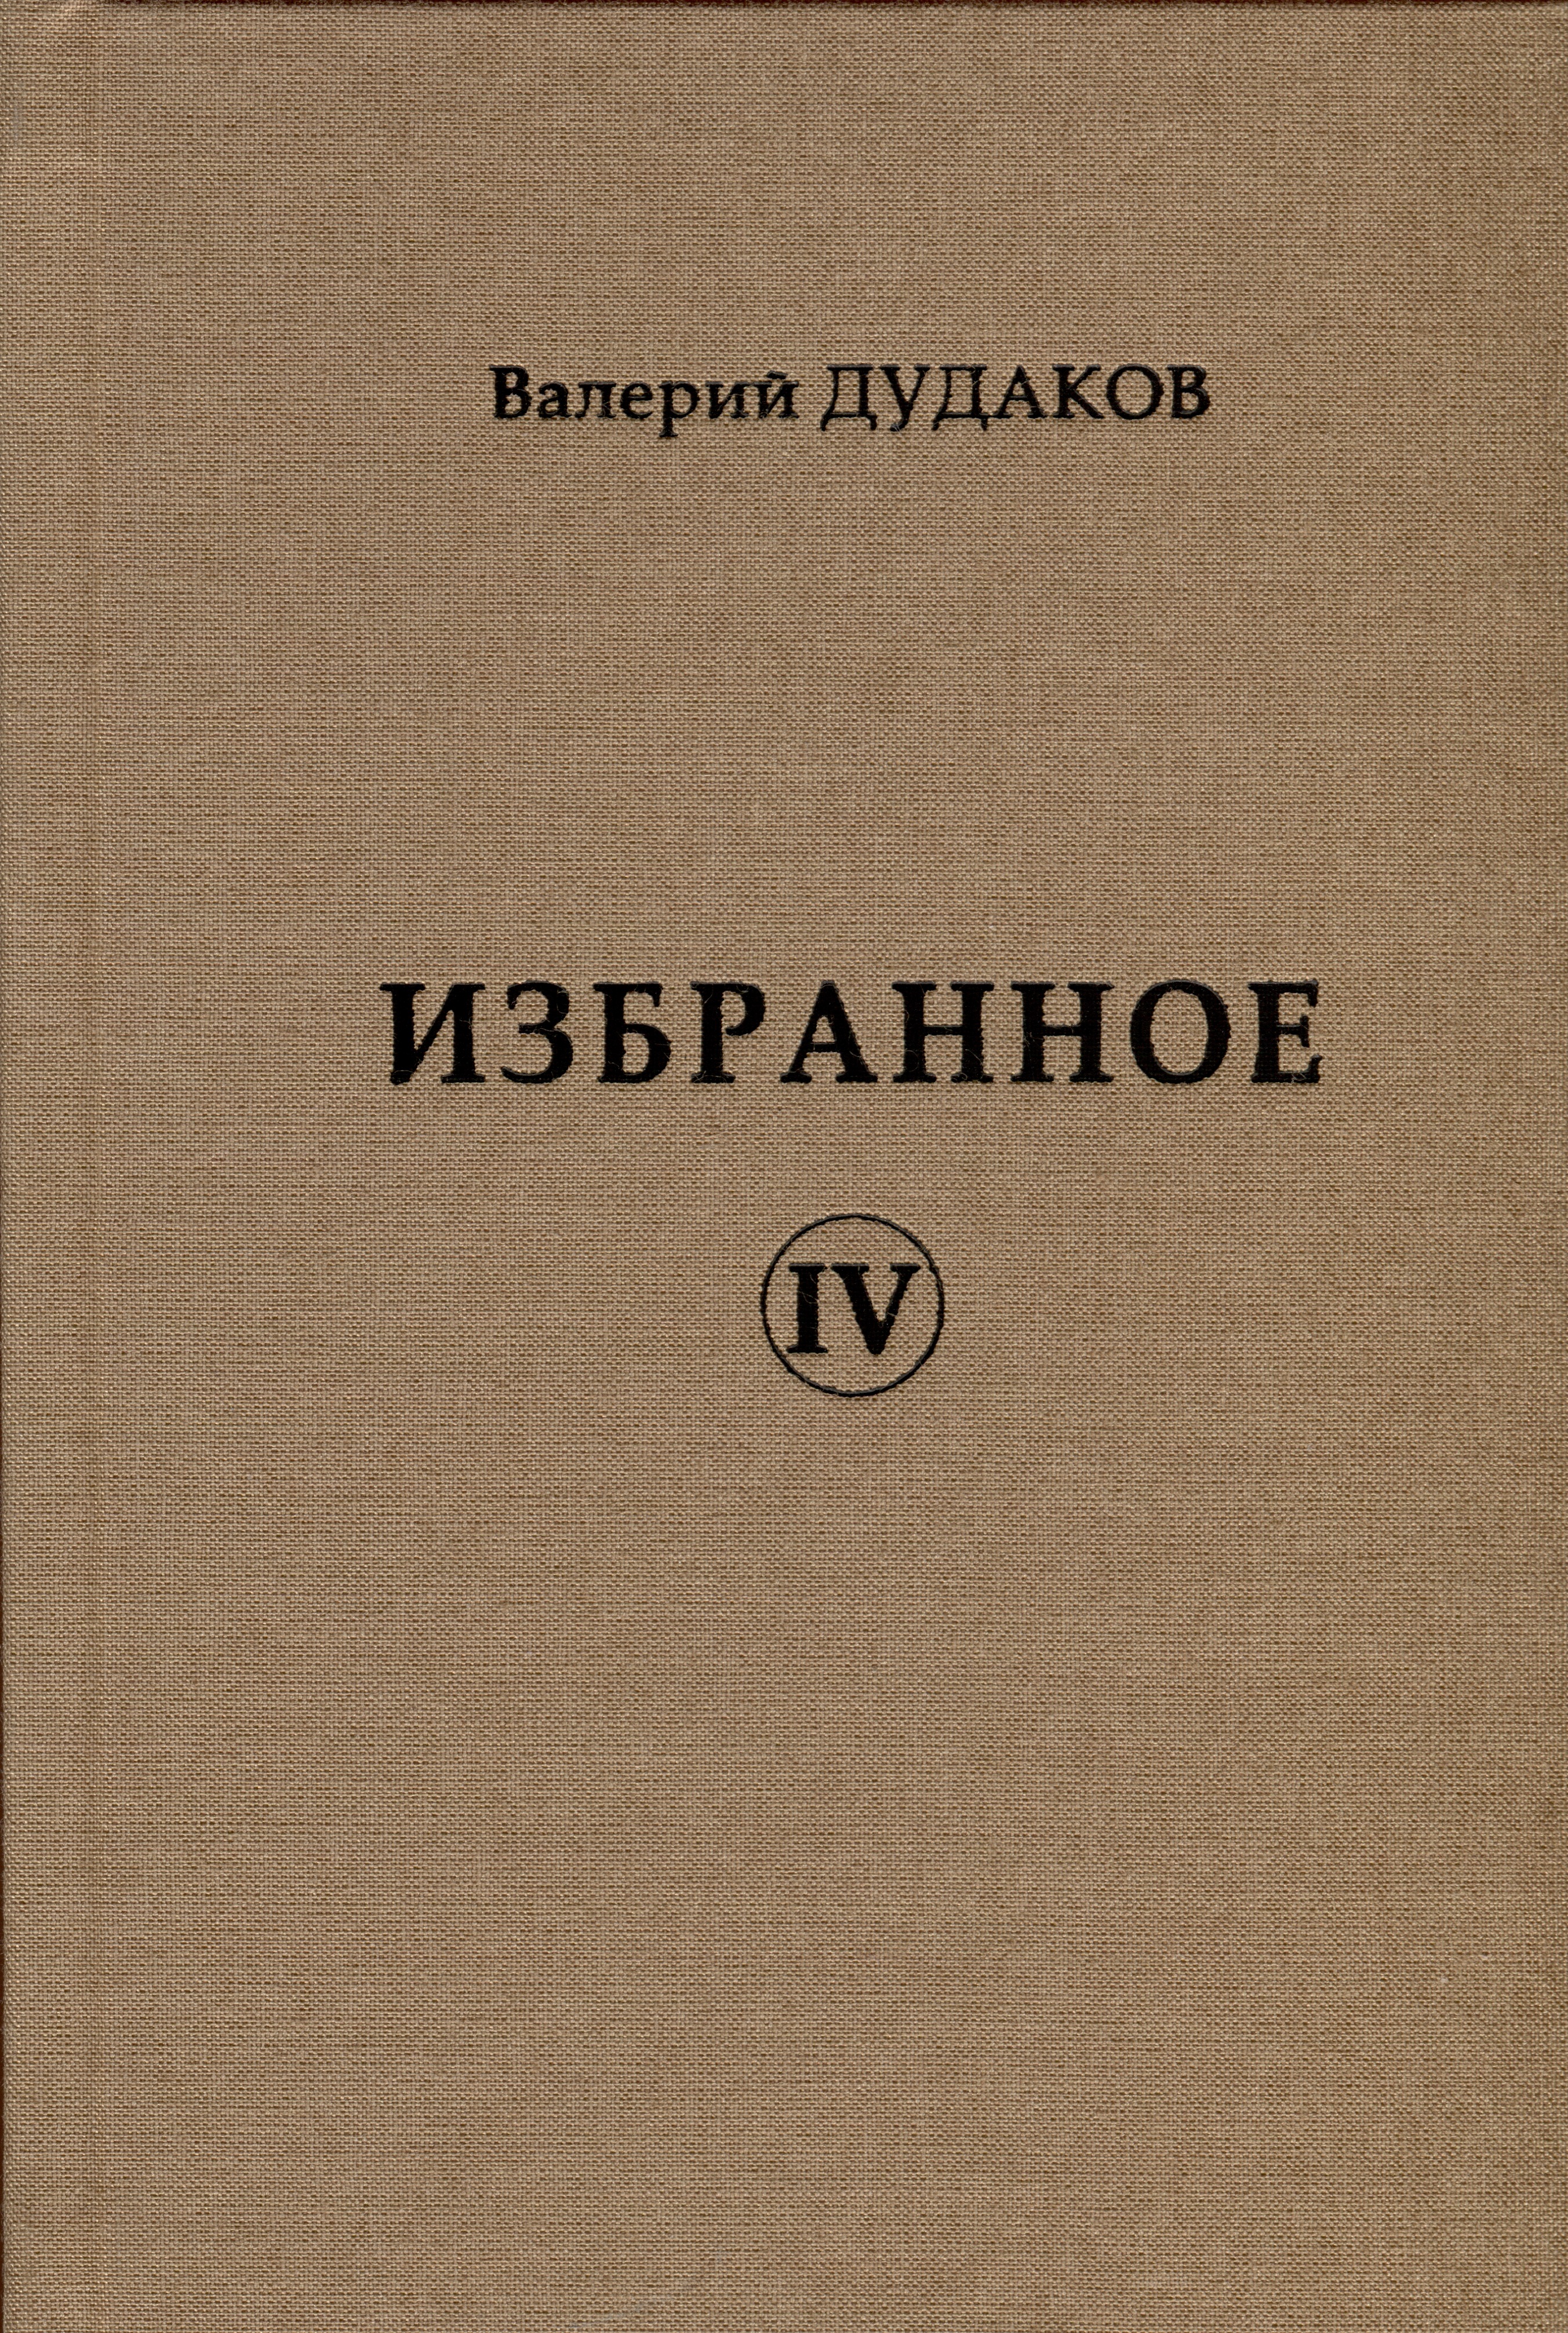 Дудаков Валерий Александрович Избранное IV крамер теодор зеленый дом избранные стихотворения